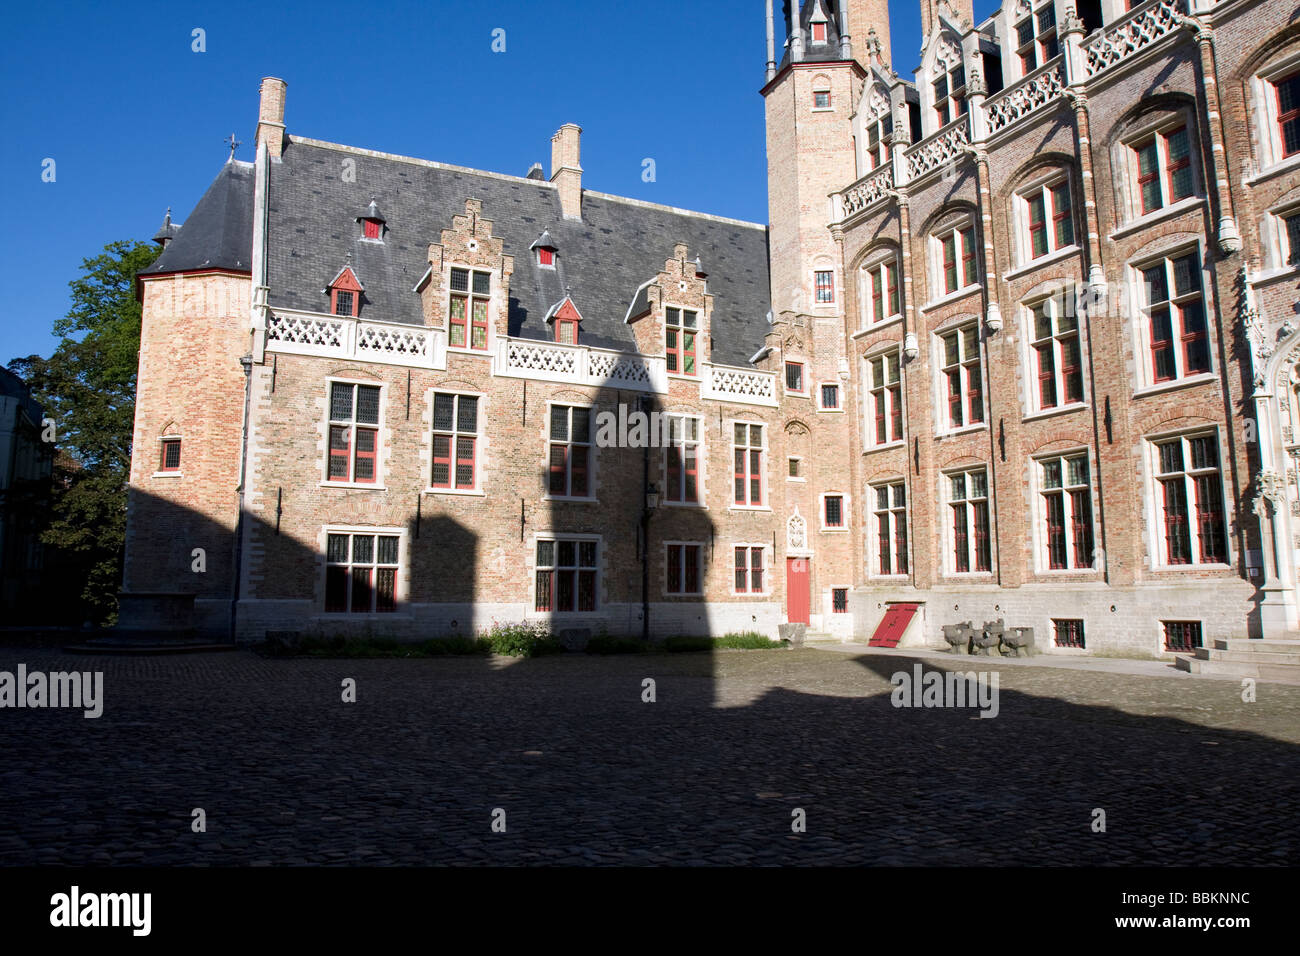 Voyage de ville Bruges (Brugge), Belgique Banque D'Images